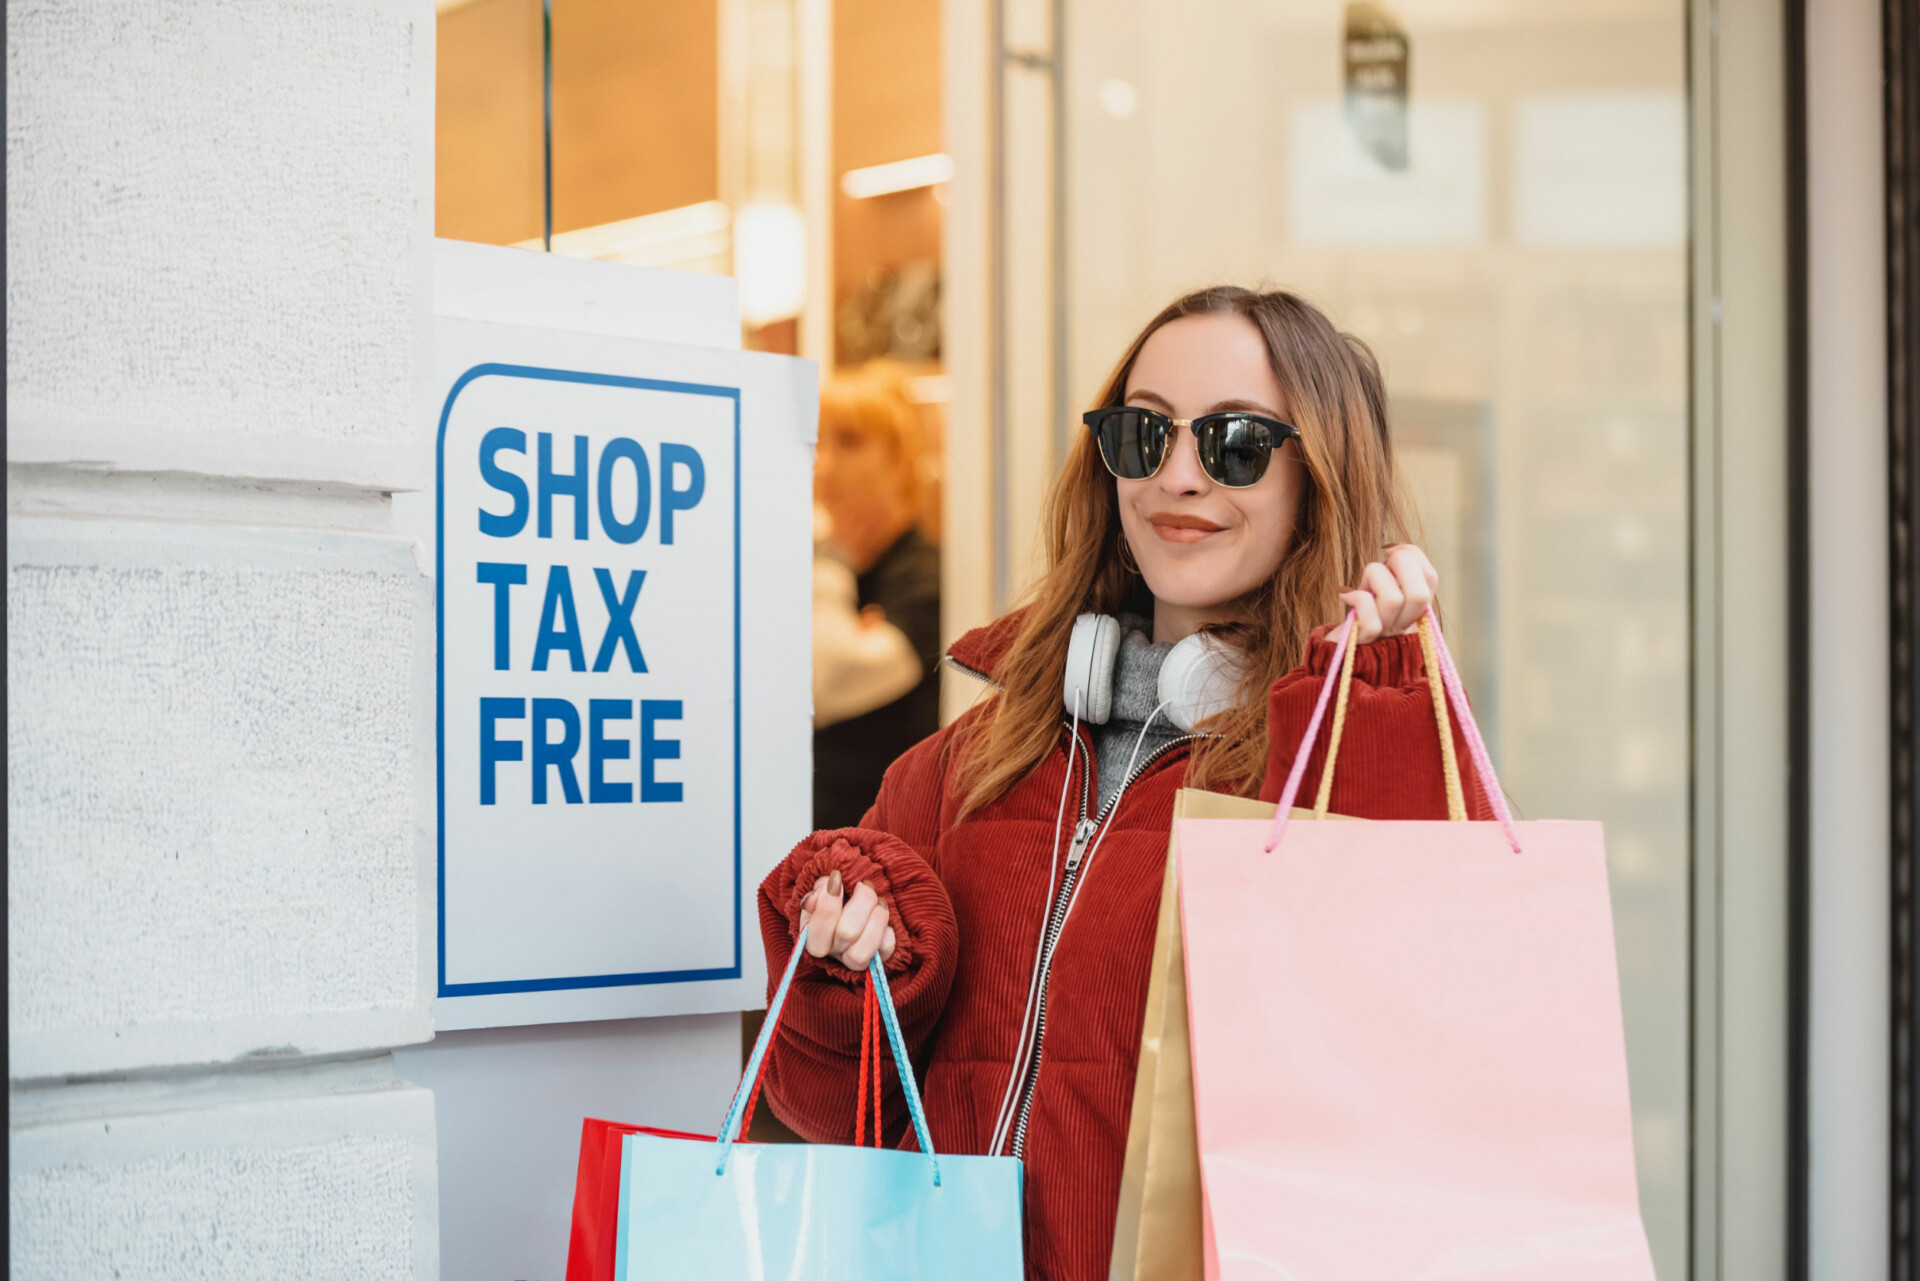 Tax Free Shopping © 123rf.com